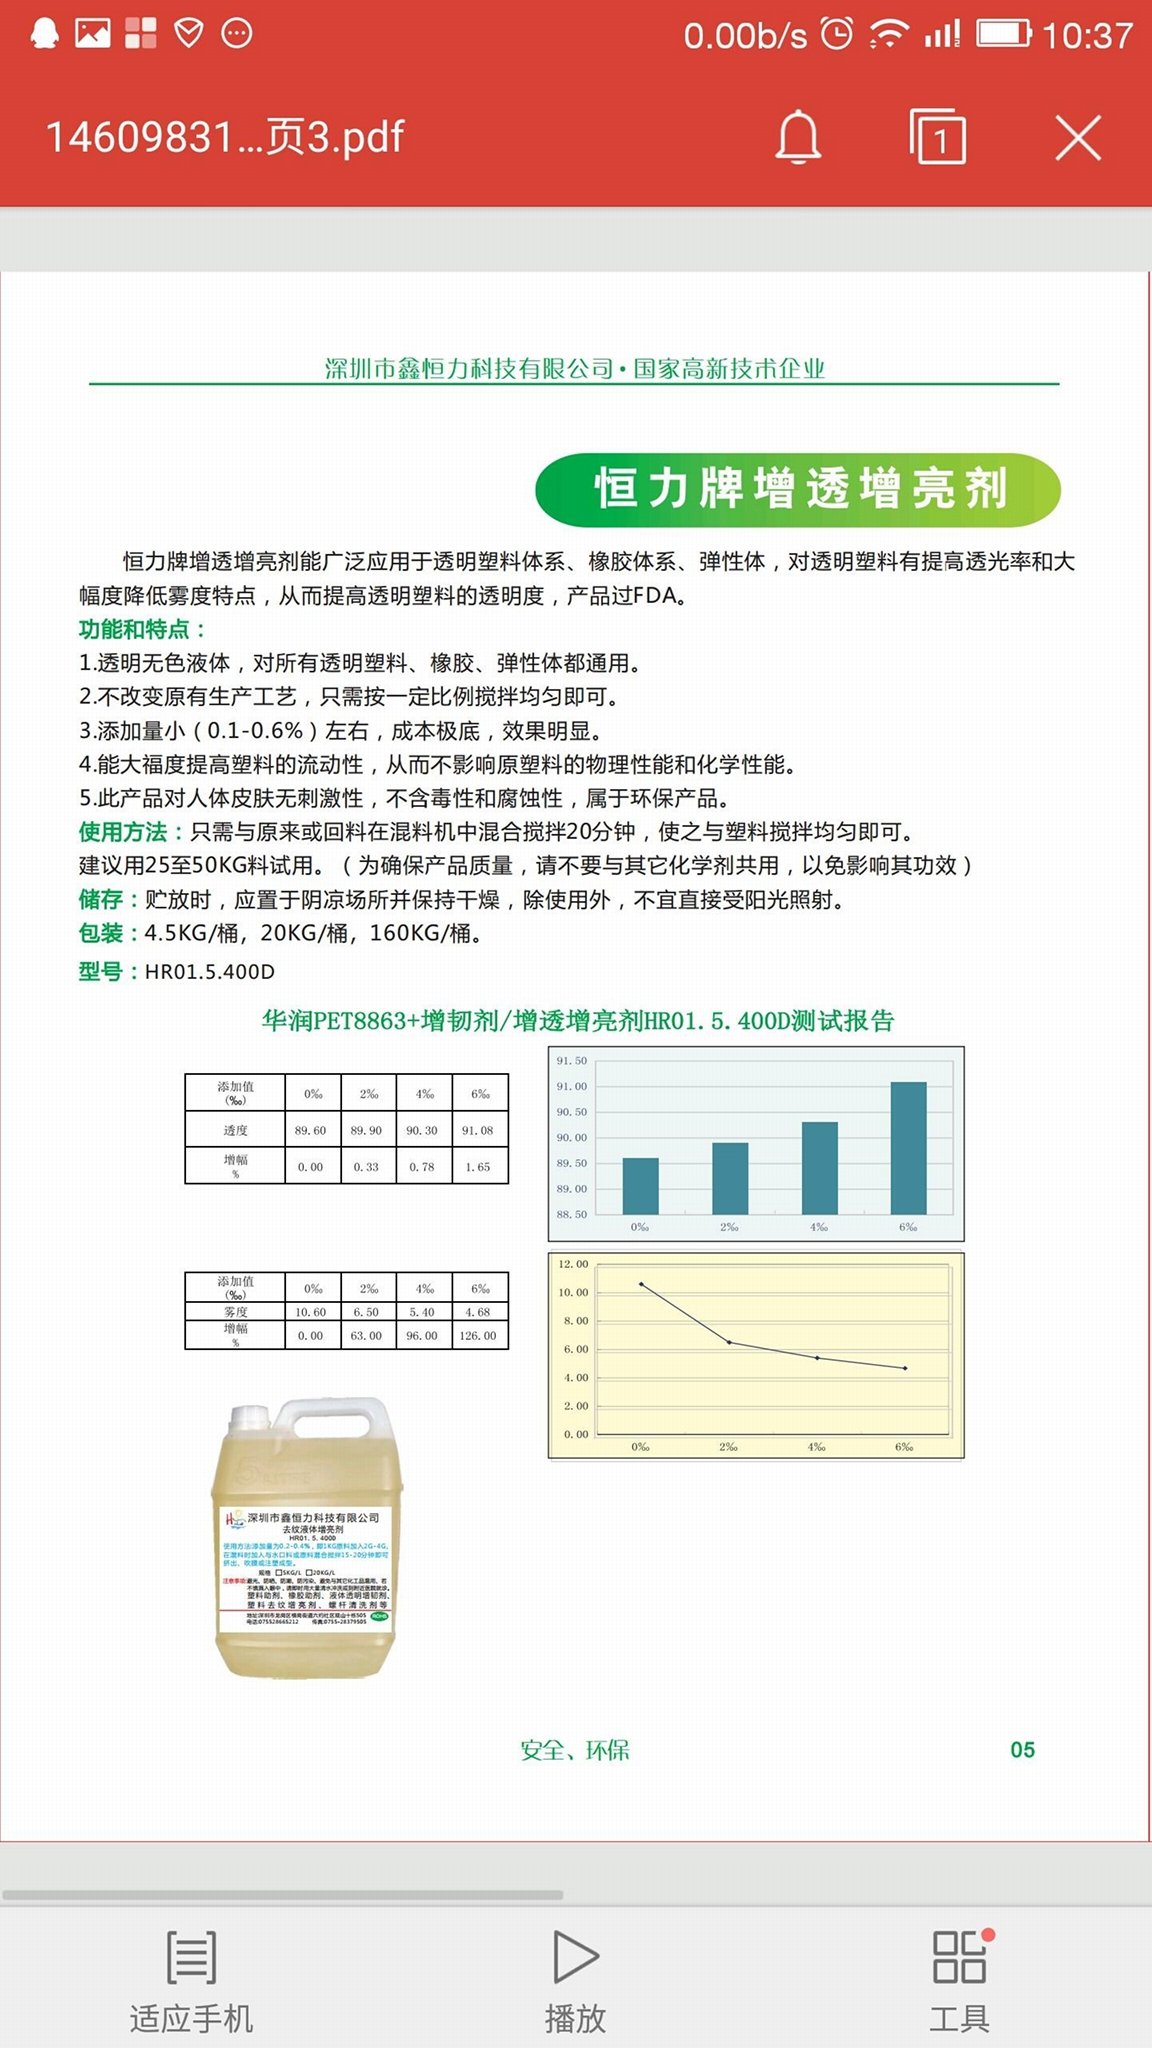 深圳厂家自主研发生产PVC液体透明增韧剂 5